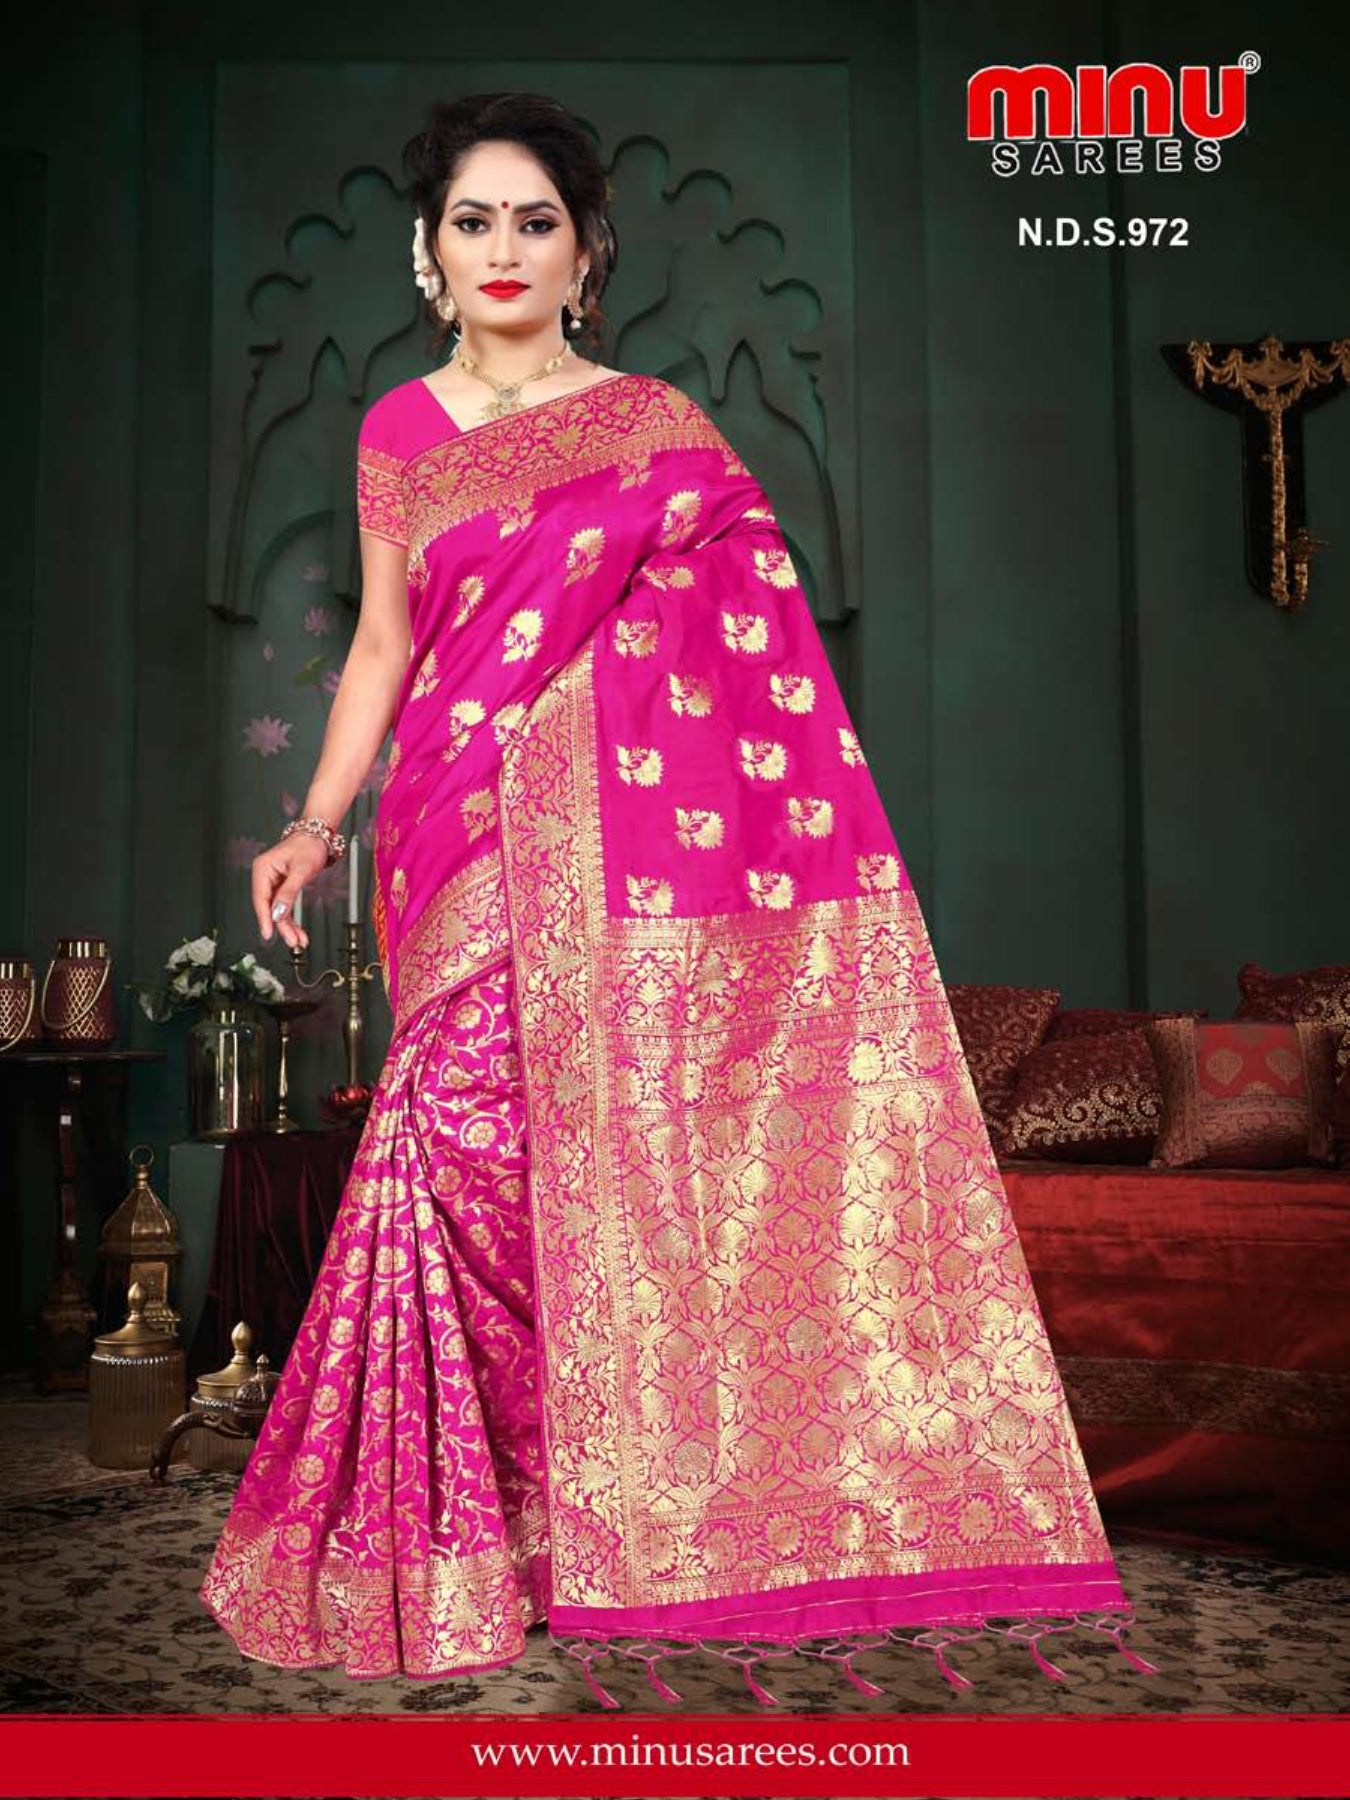 Woman wearing modern designing fancy saree online image